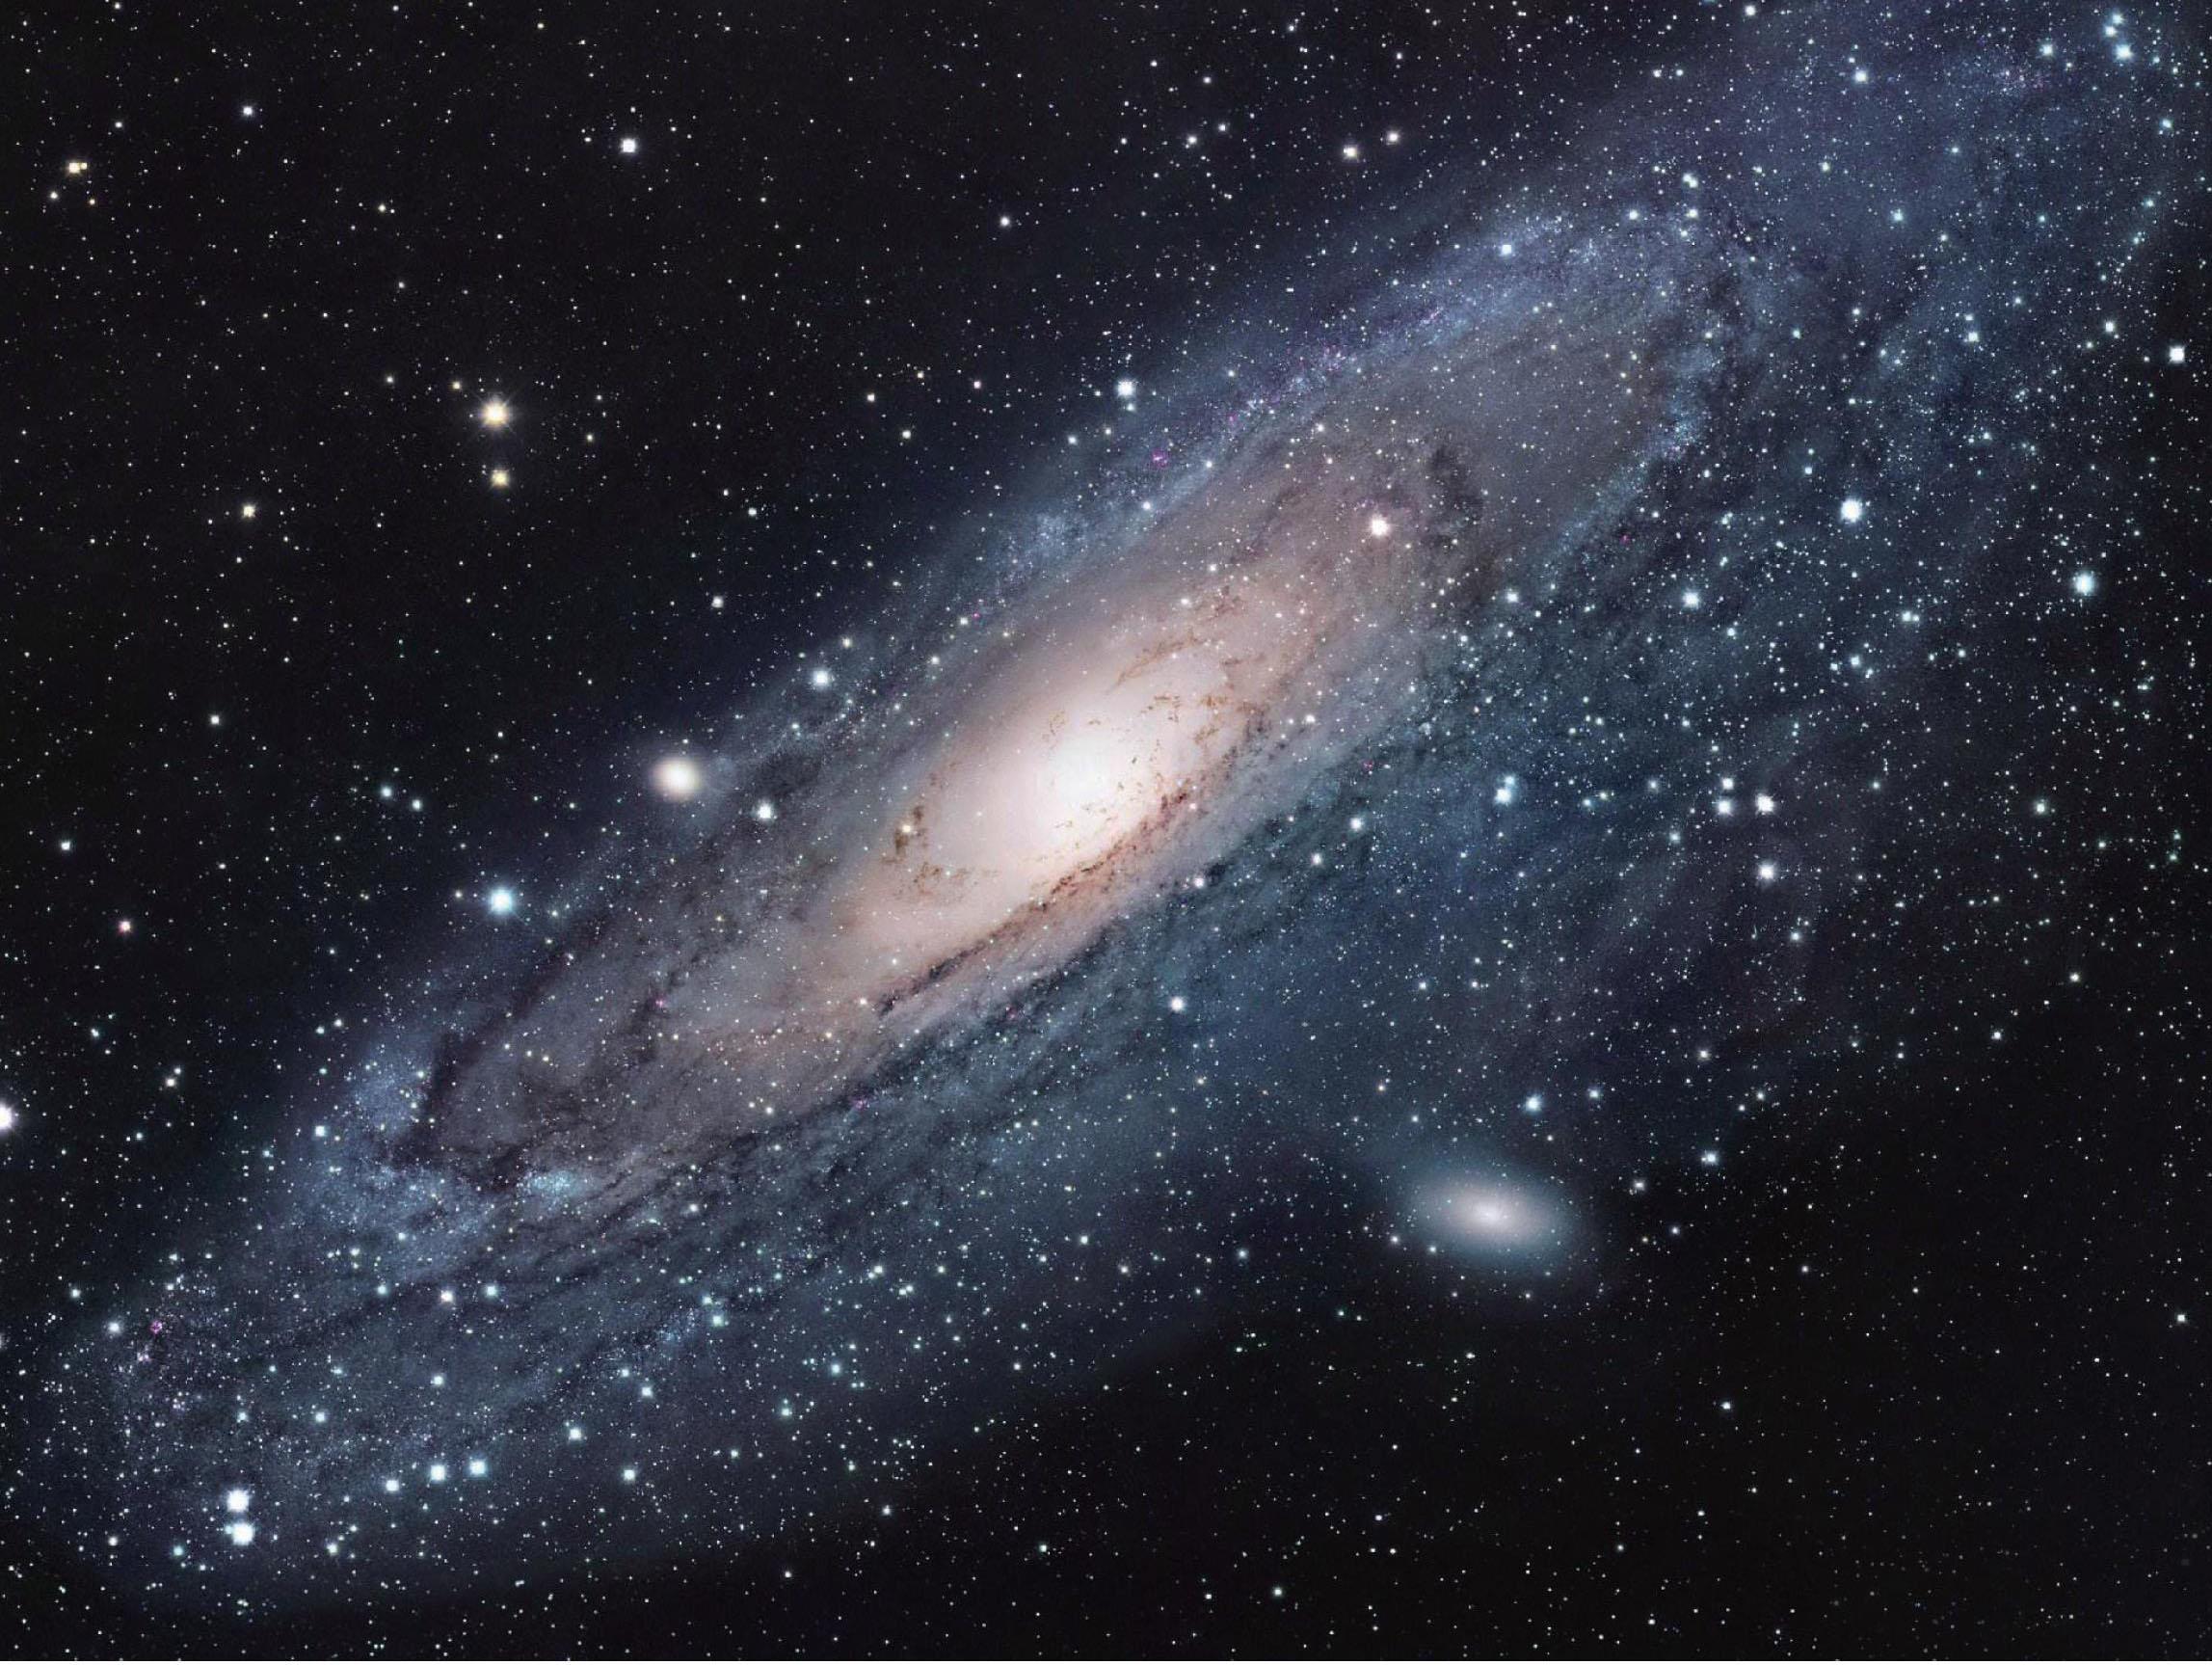 银河系最大气体结构:将改变对银河系物质形状认识